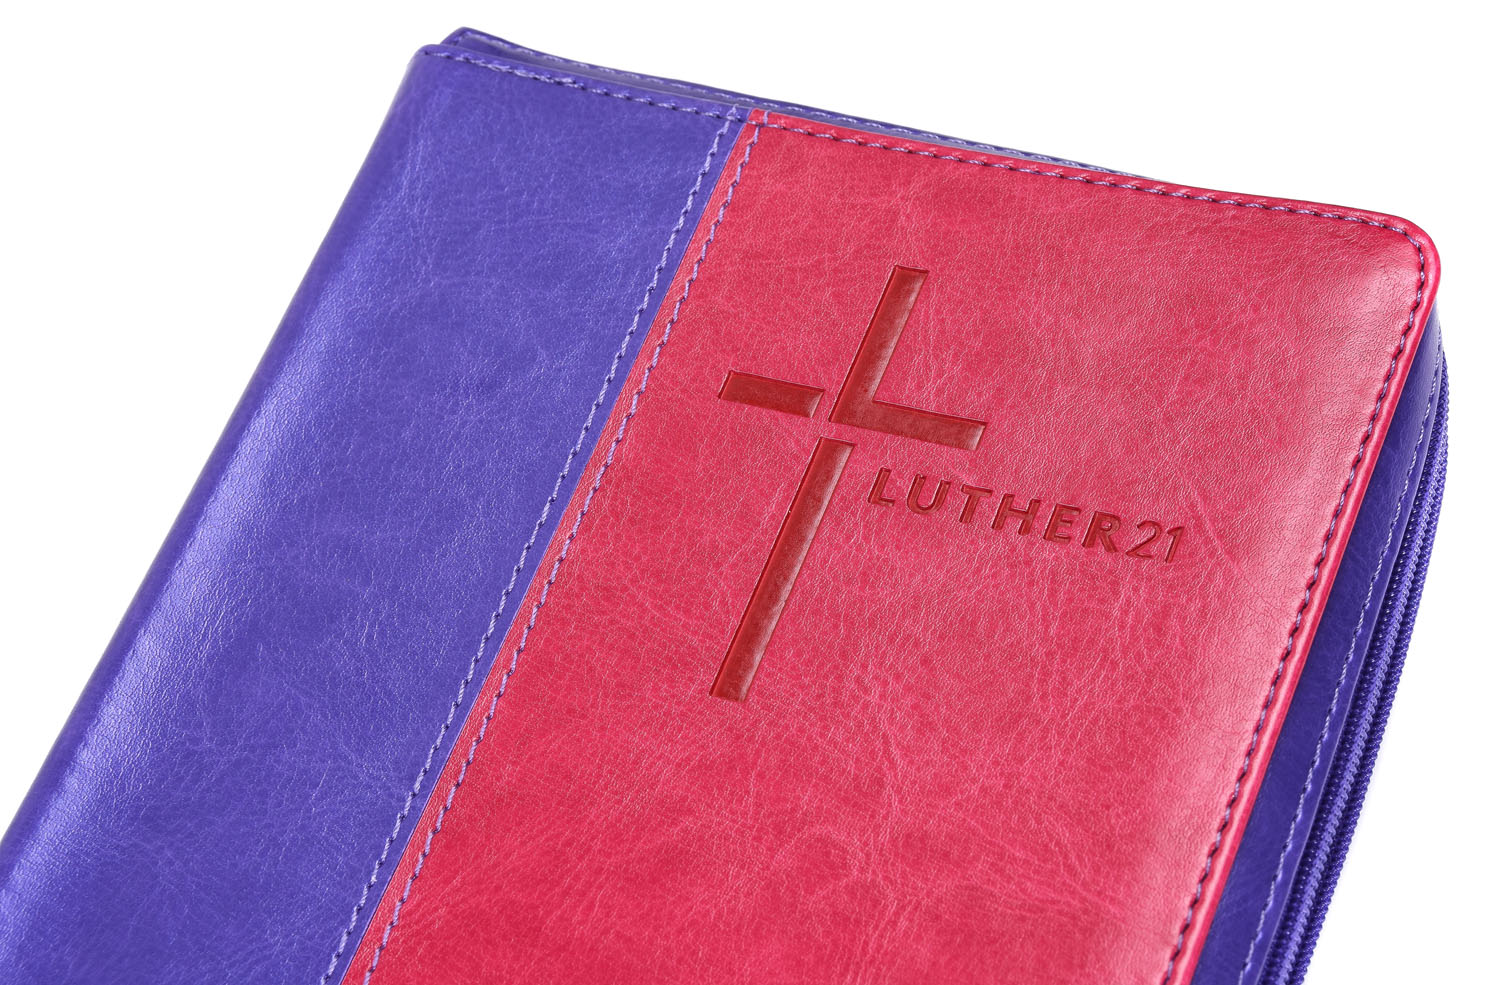 Luther21 - Standardausgabe -  Kunstleder lila/pink